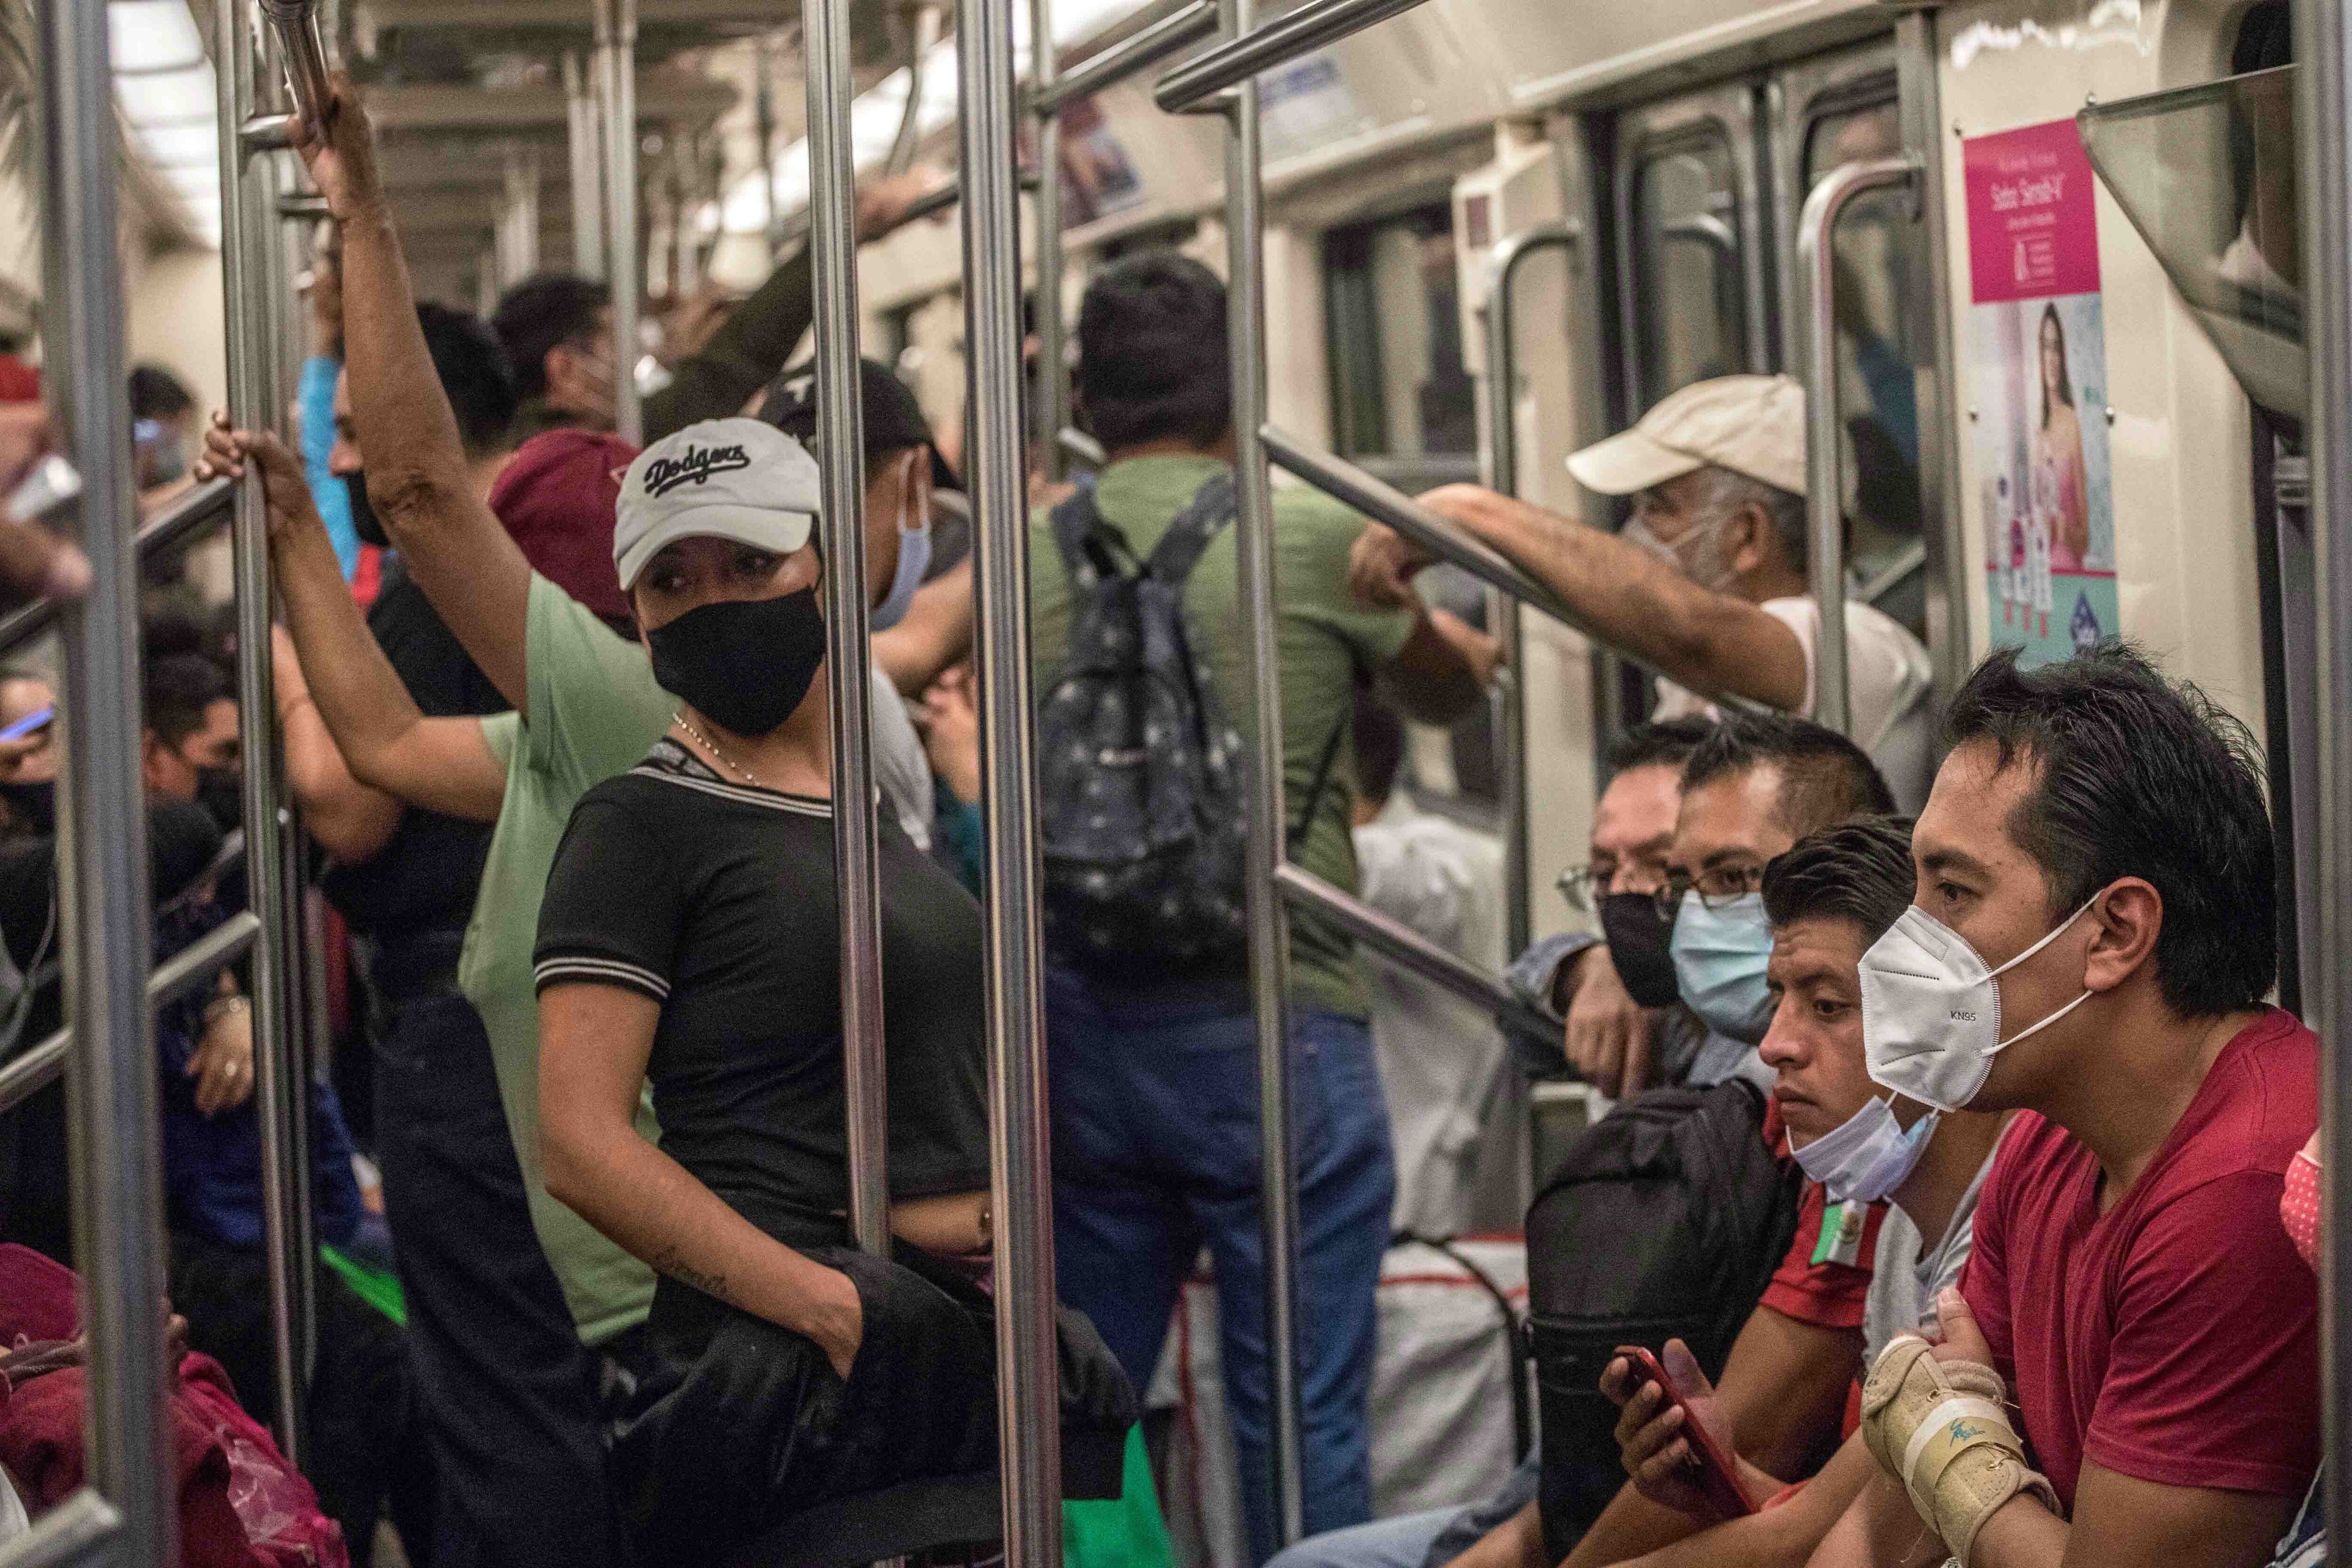 22/10/2020 Un grupo de pasajeros en uno de los vagones de la red de metro de Ciudad de México.
POLITICA CENTROAMÉRICA MÉXICO LATINOAMÉRICA INTERNACIONAL
EL UNIVERSAL / ZUMA PRESS / CONTACTOPHOTO
